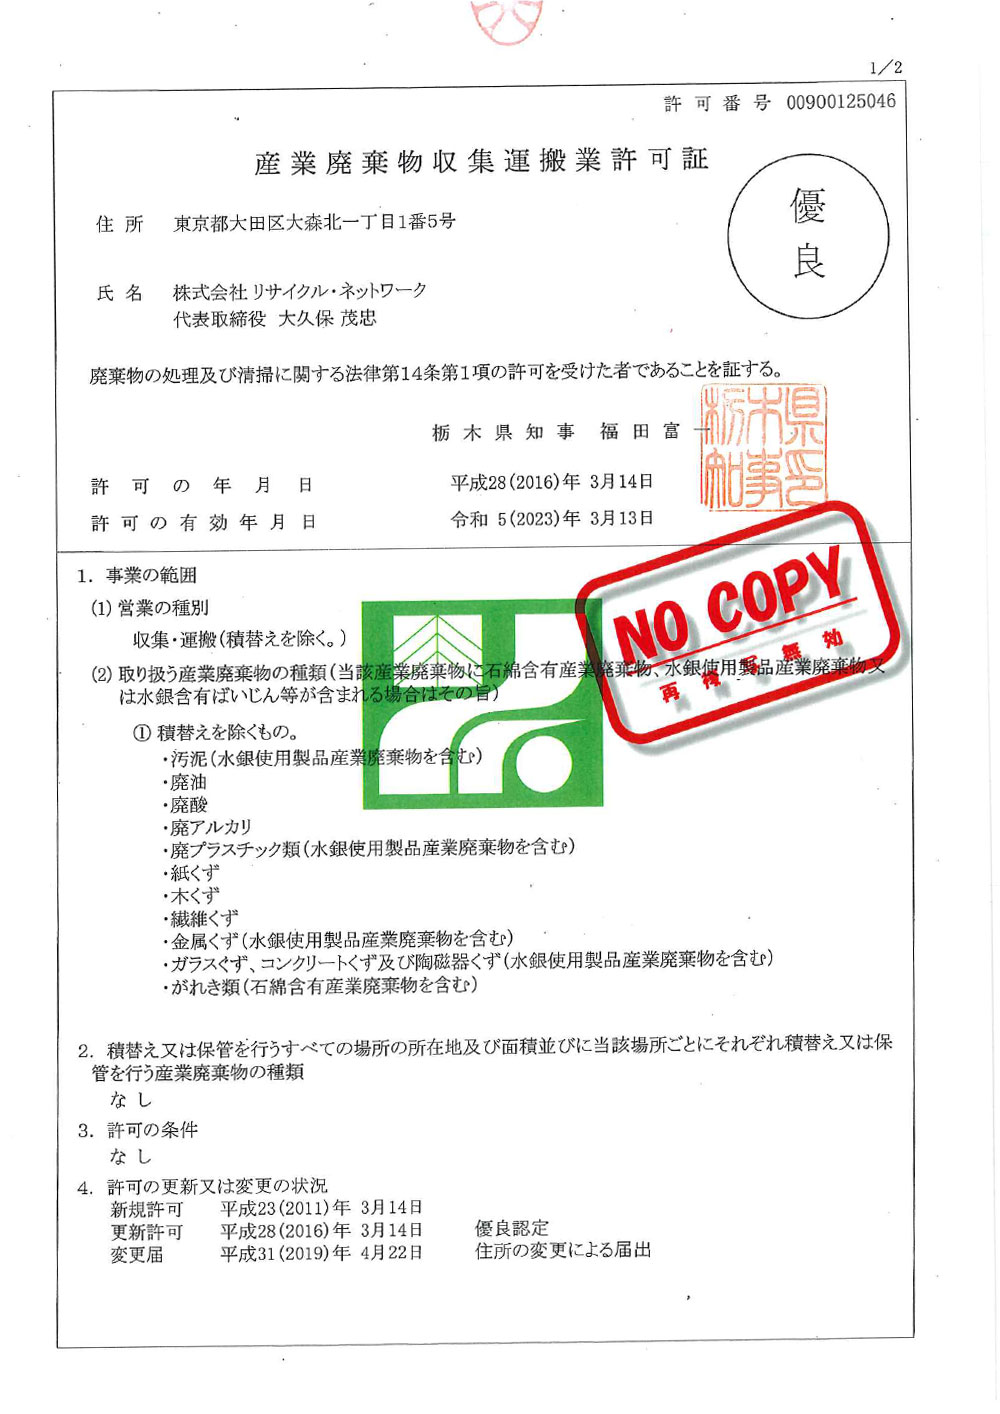 栃木県 産業廃棄物収集運搬許可証